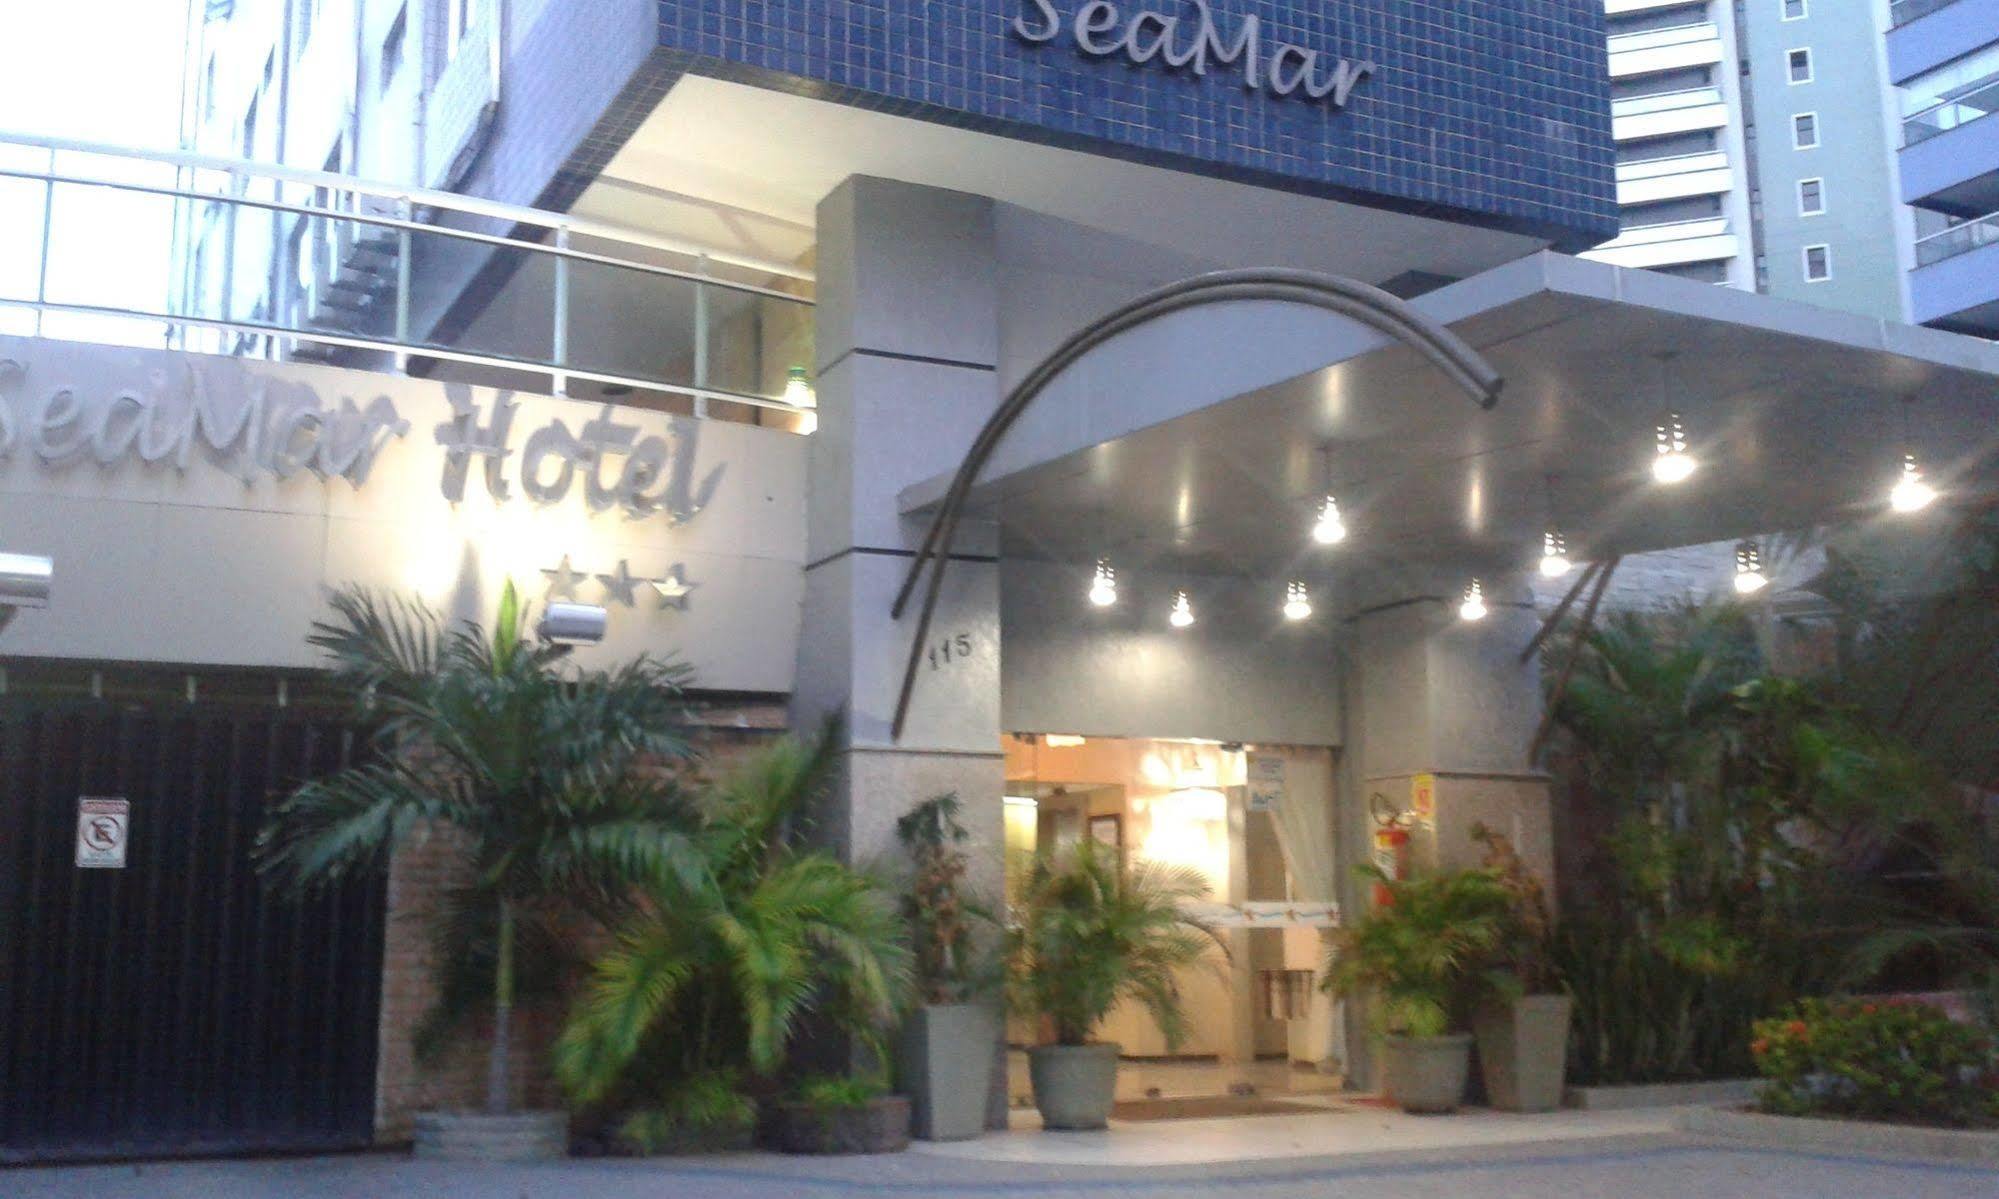 Seamar Hotel ฟอร์ตาเลซา ภายนอก รูปภาพ